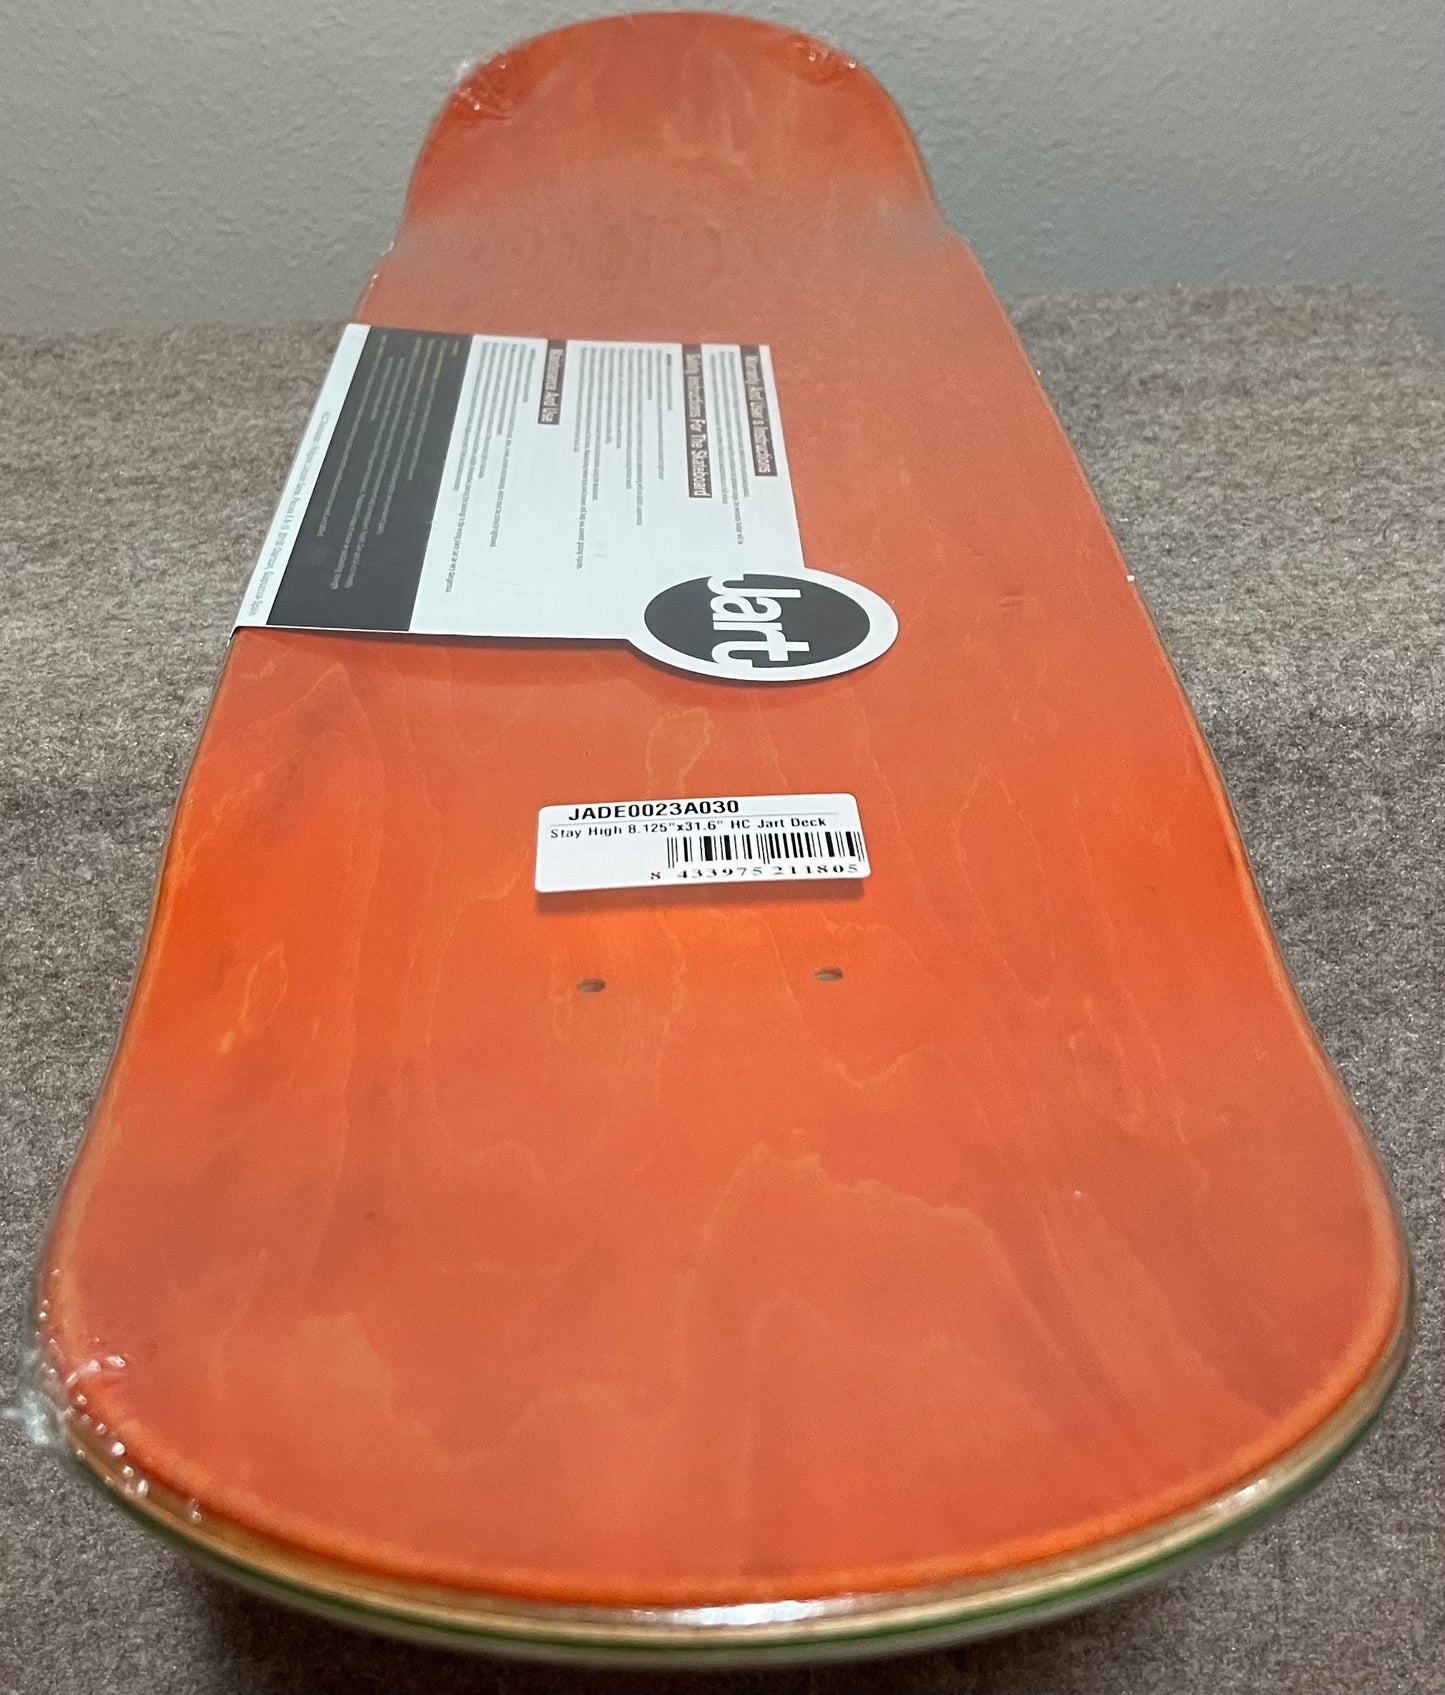 Almost Wax Nug – 941 Skate Shop